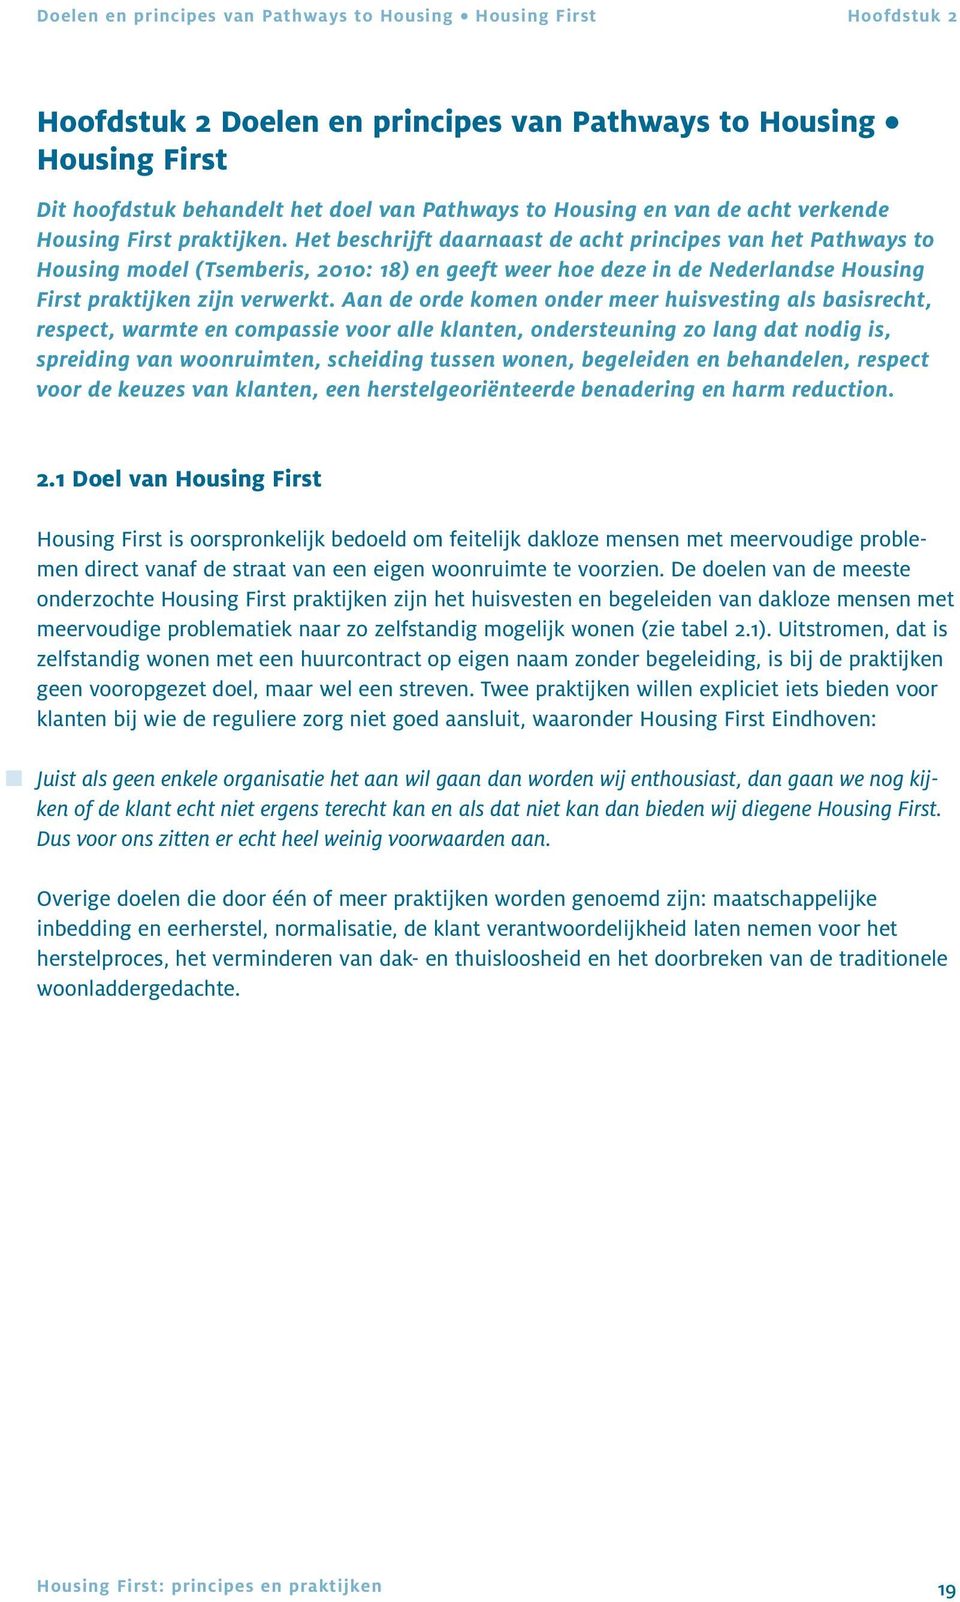 Het beschrijft daarnaast de acht principes van het Pathways to Housing model (Tsemberis, 2010: 18) en geeft weer hoe deze in de Nederlandse Housing First praktijken zijn verwerkt.